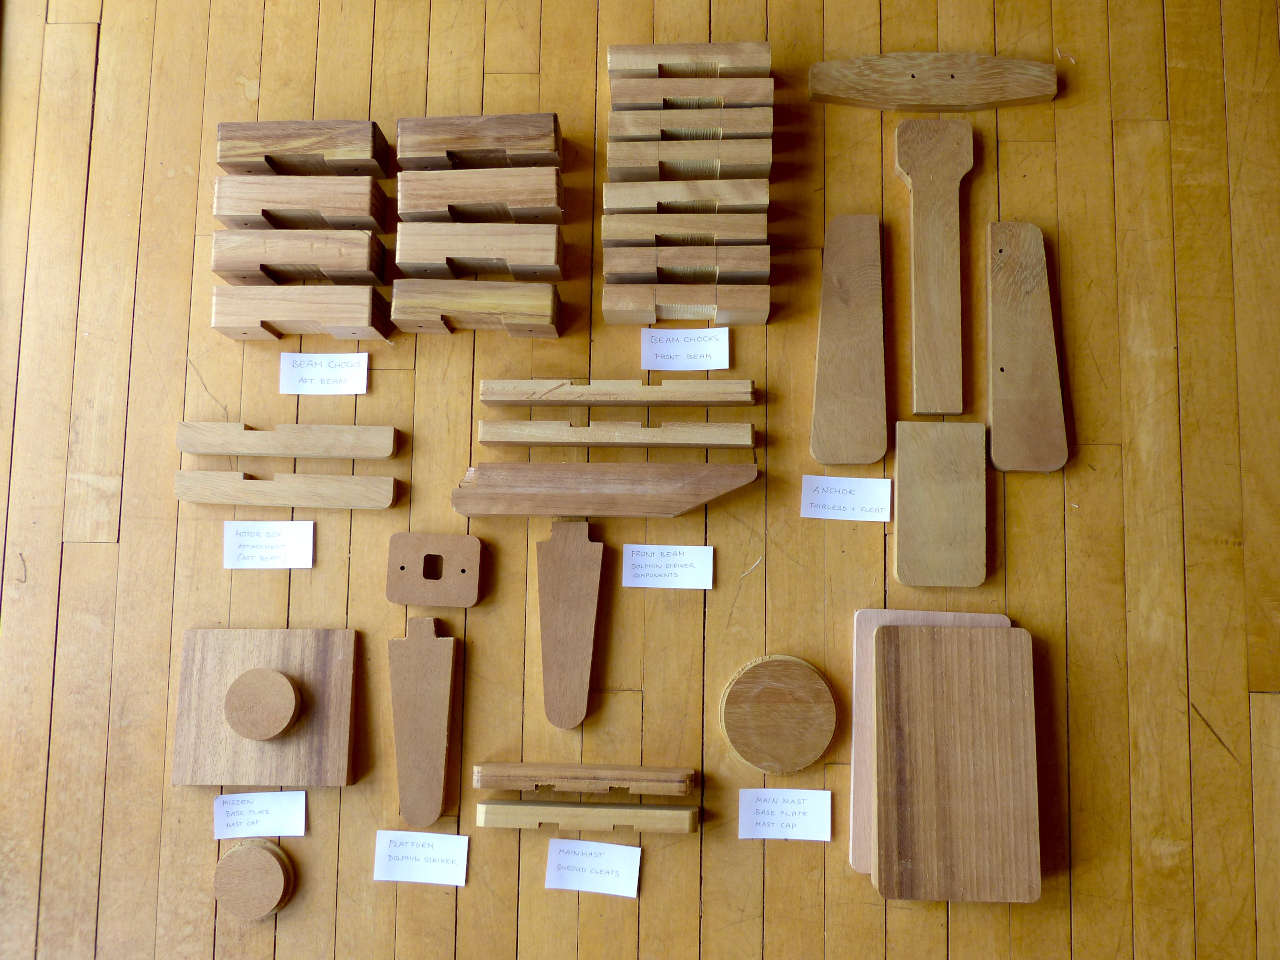 Hardwood blocks and fittings